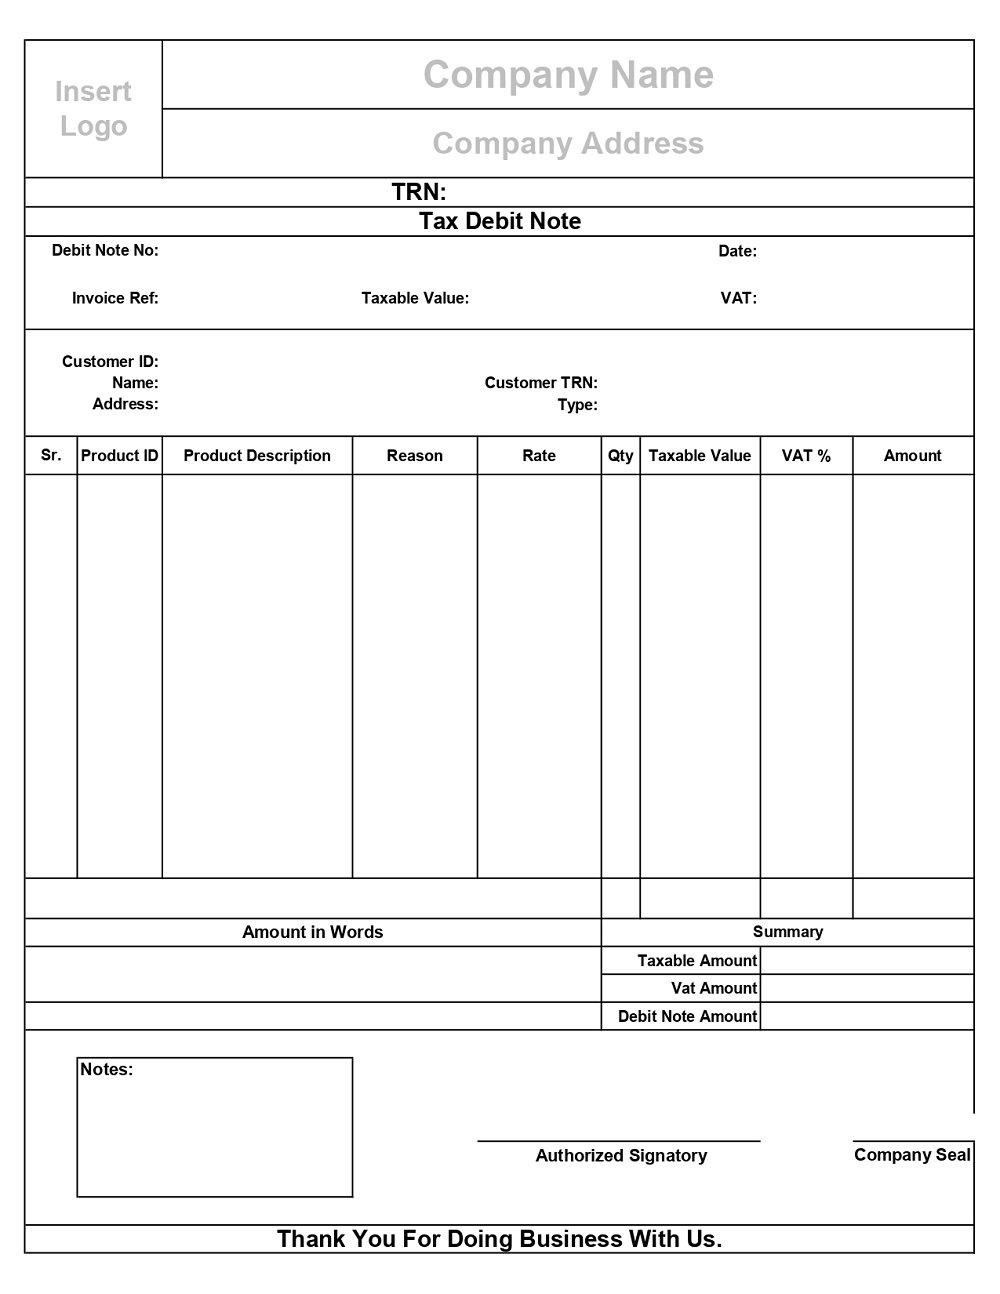 Printable UAE VAT Debit Note Format